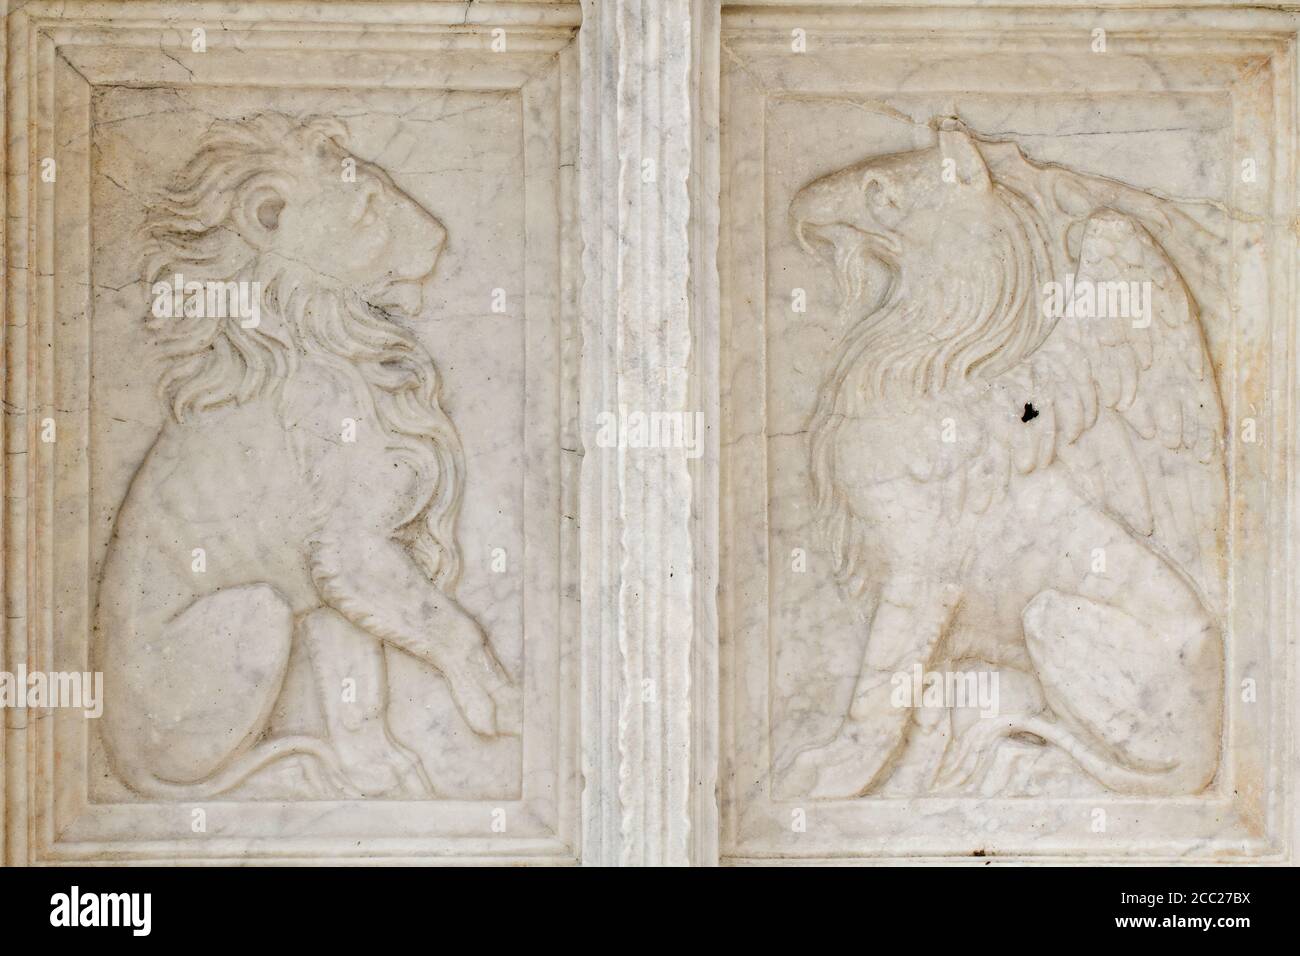 Le Griffin et le Lion- détail de Fontana Maggiore (1275), un chef-d'œuvre de sculpture médiévale symbole de la ville de Pérouse - Italie Banque D'Images